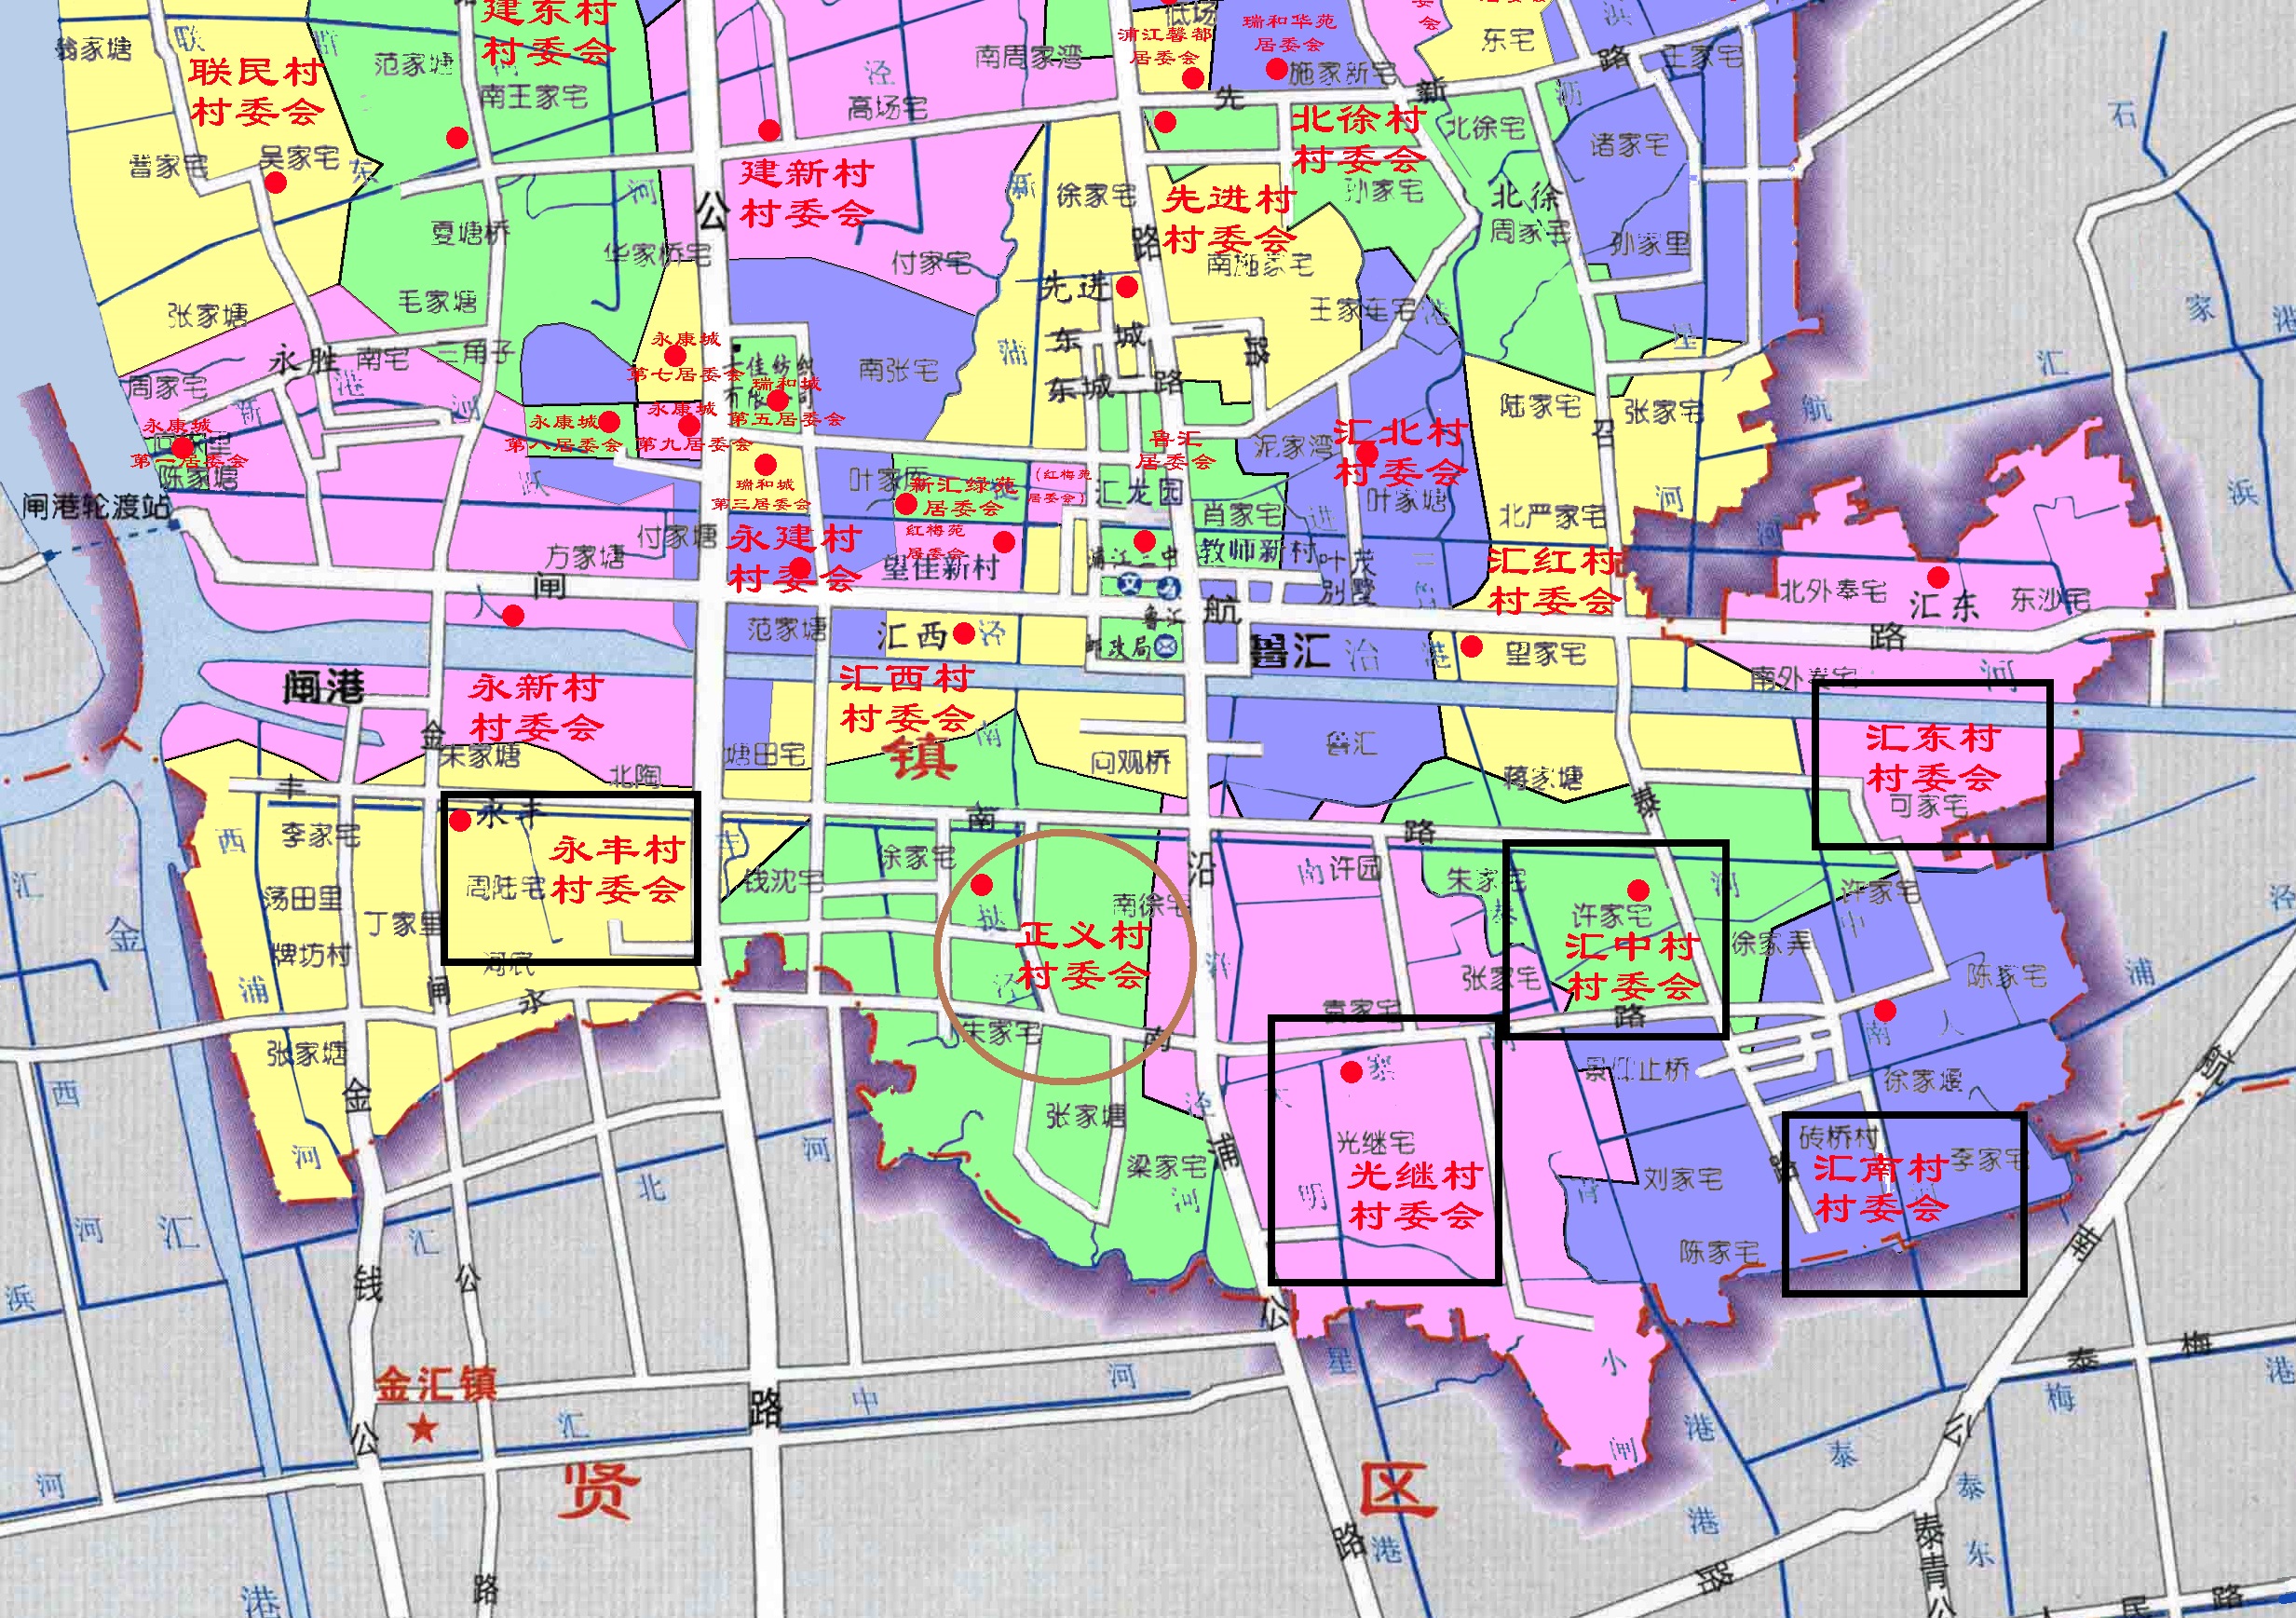 上海市闵行区的农村都在这里:浦江镇南部6个村被定为成农业区